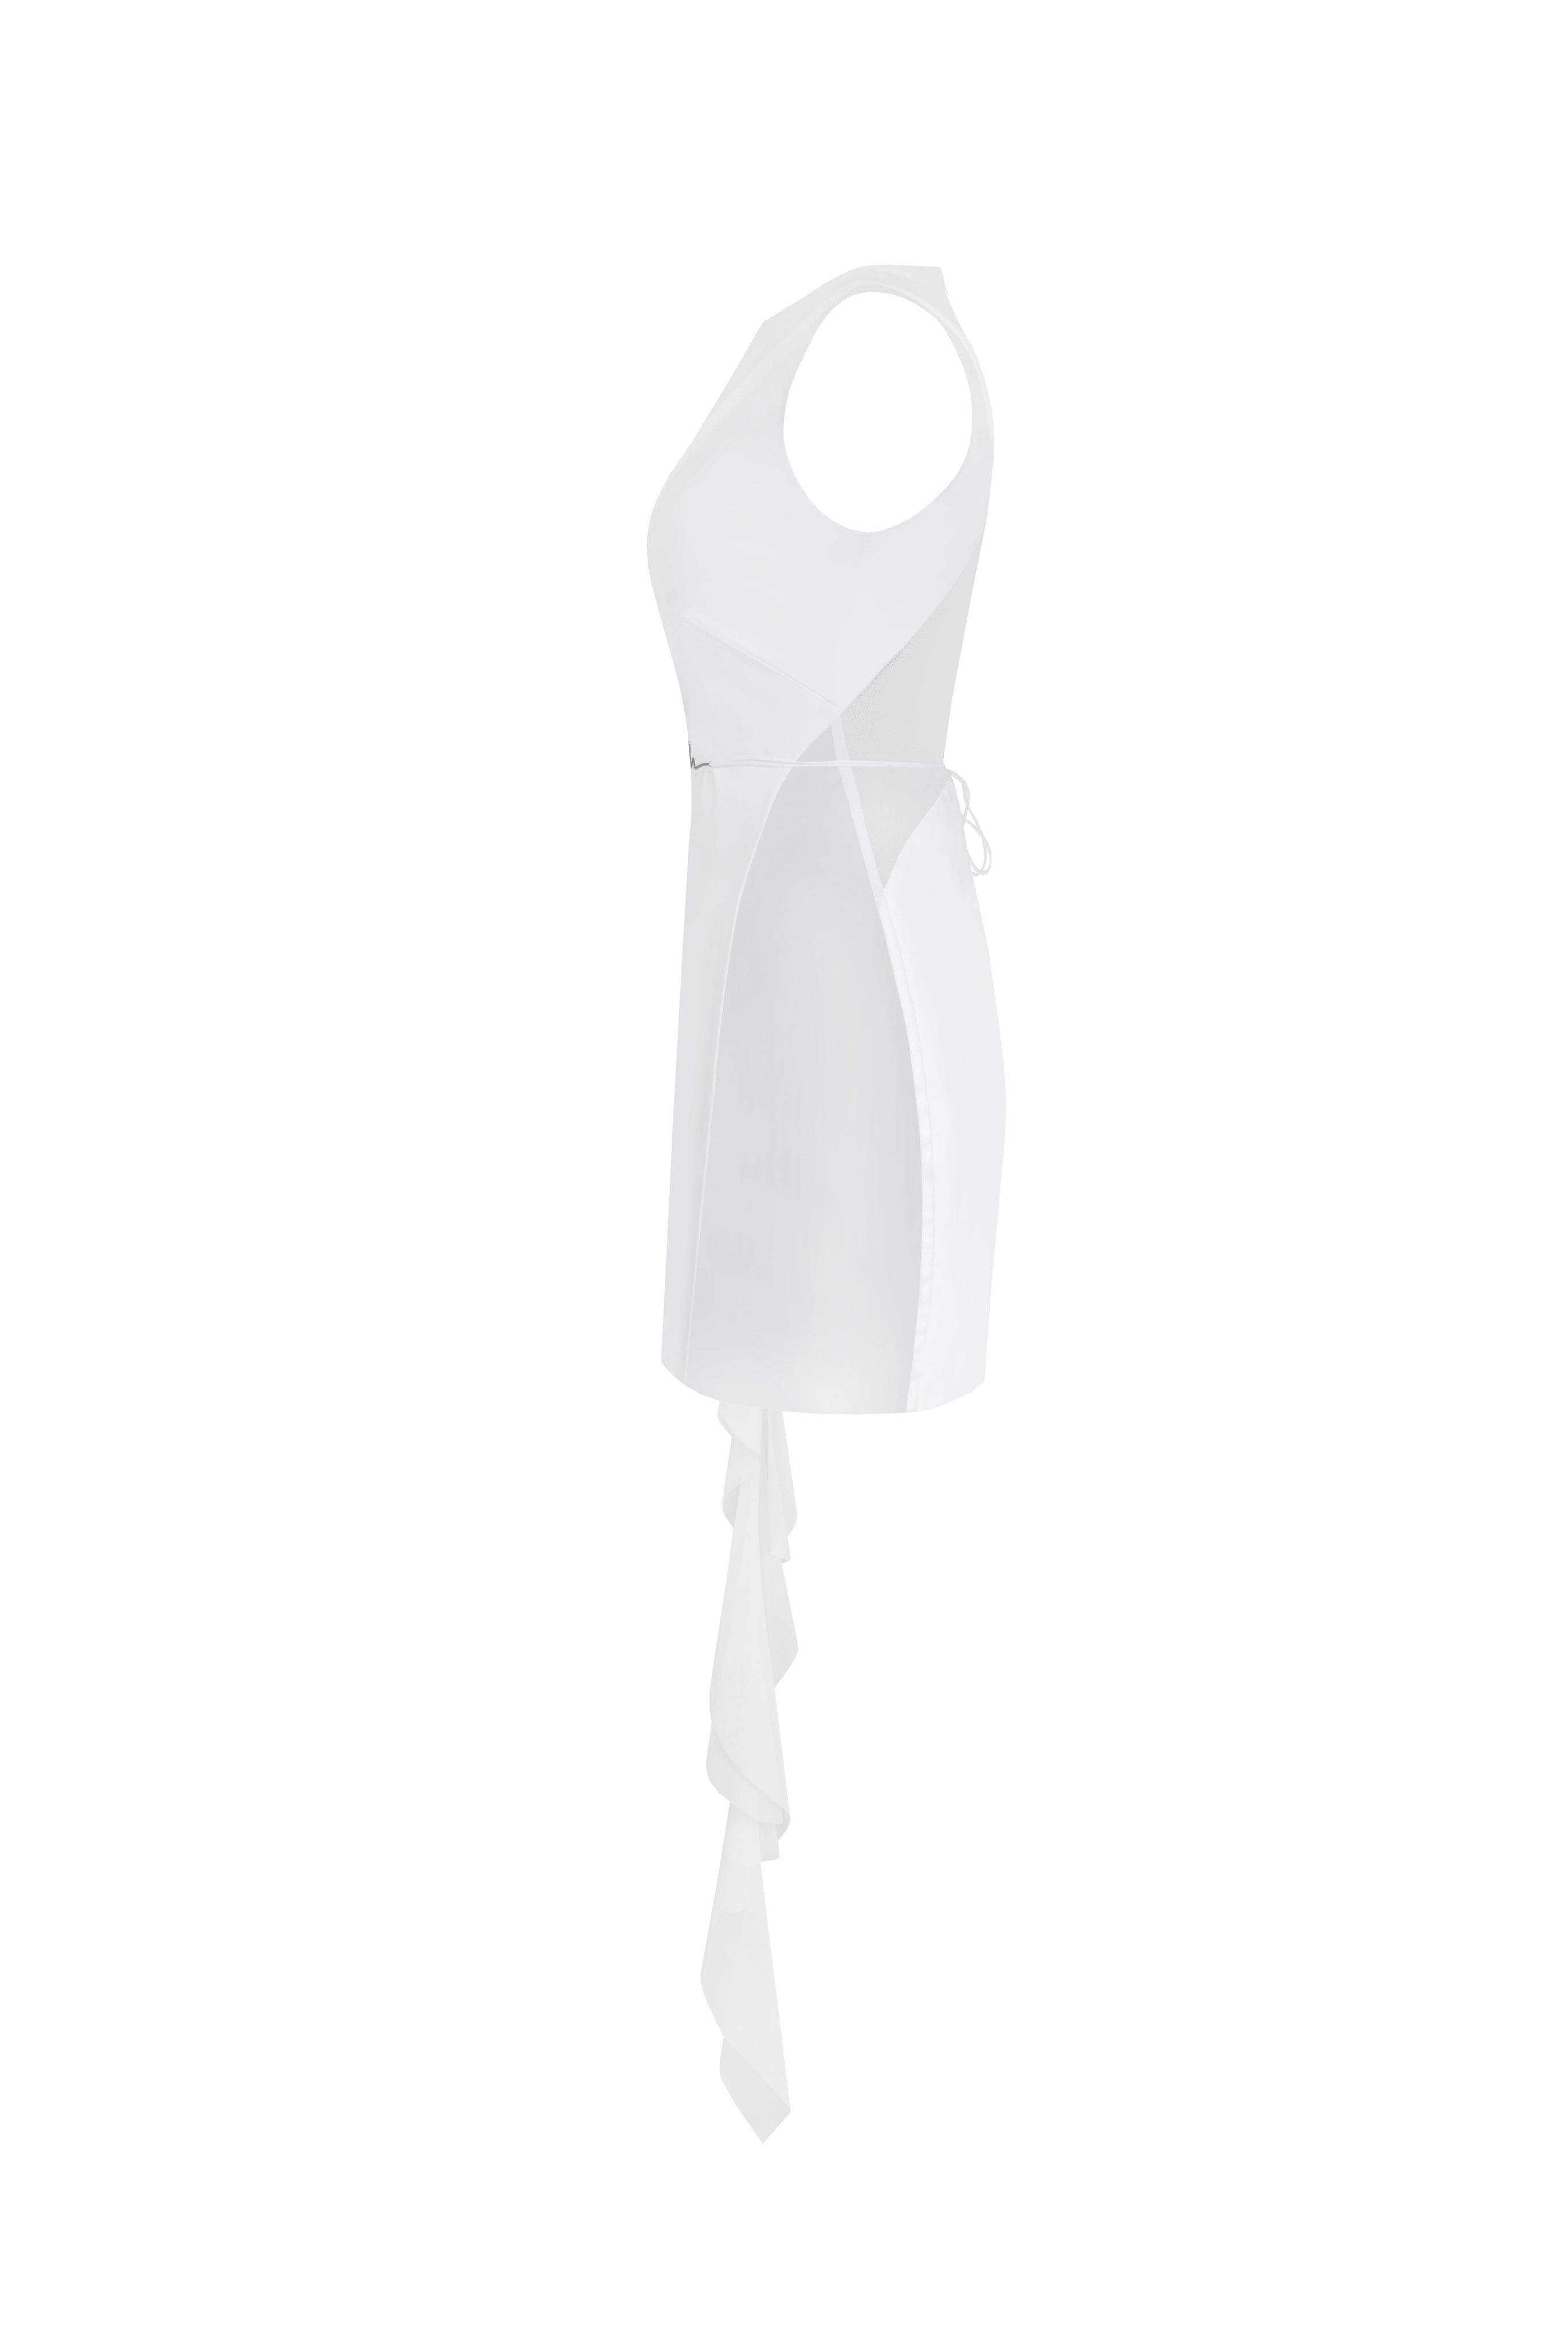 فستان قصير مذهل بكتف واحد مع إضافات شفافة باللون الأبيض